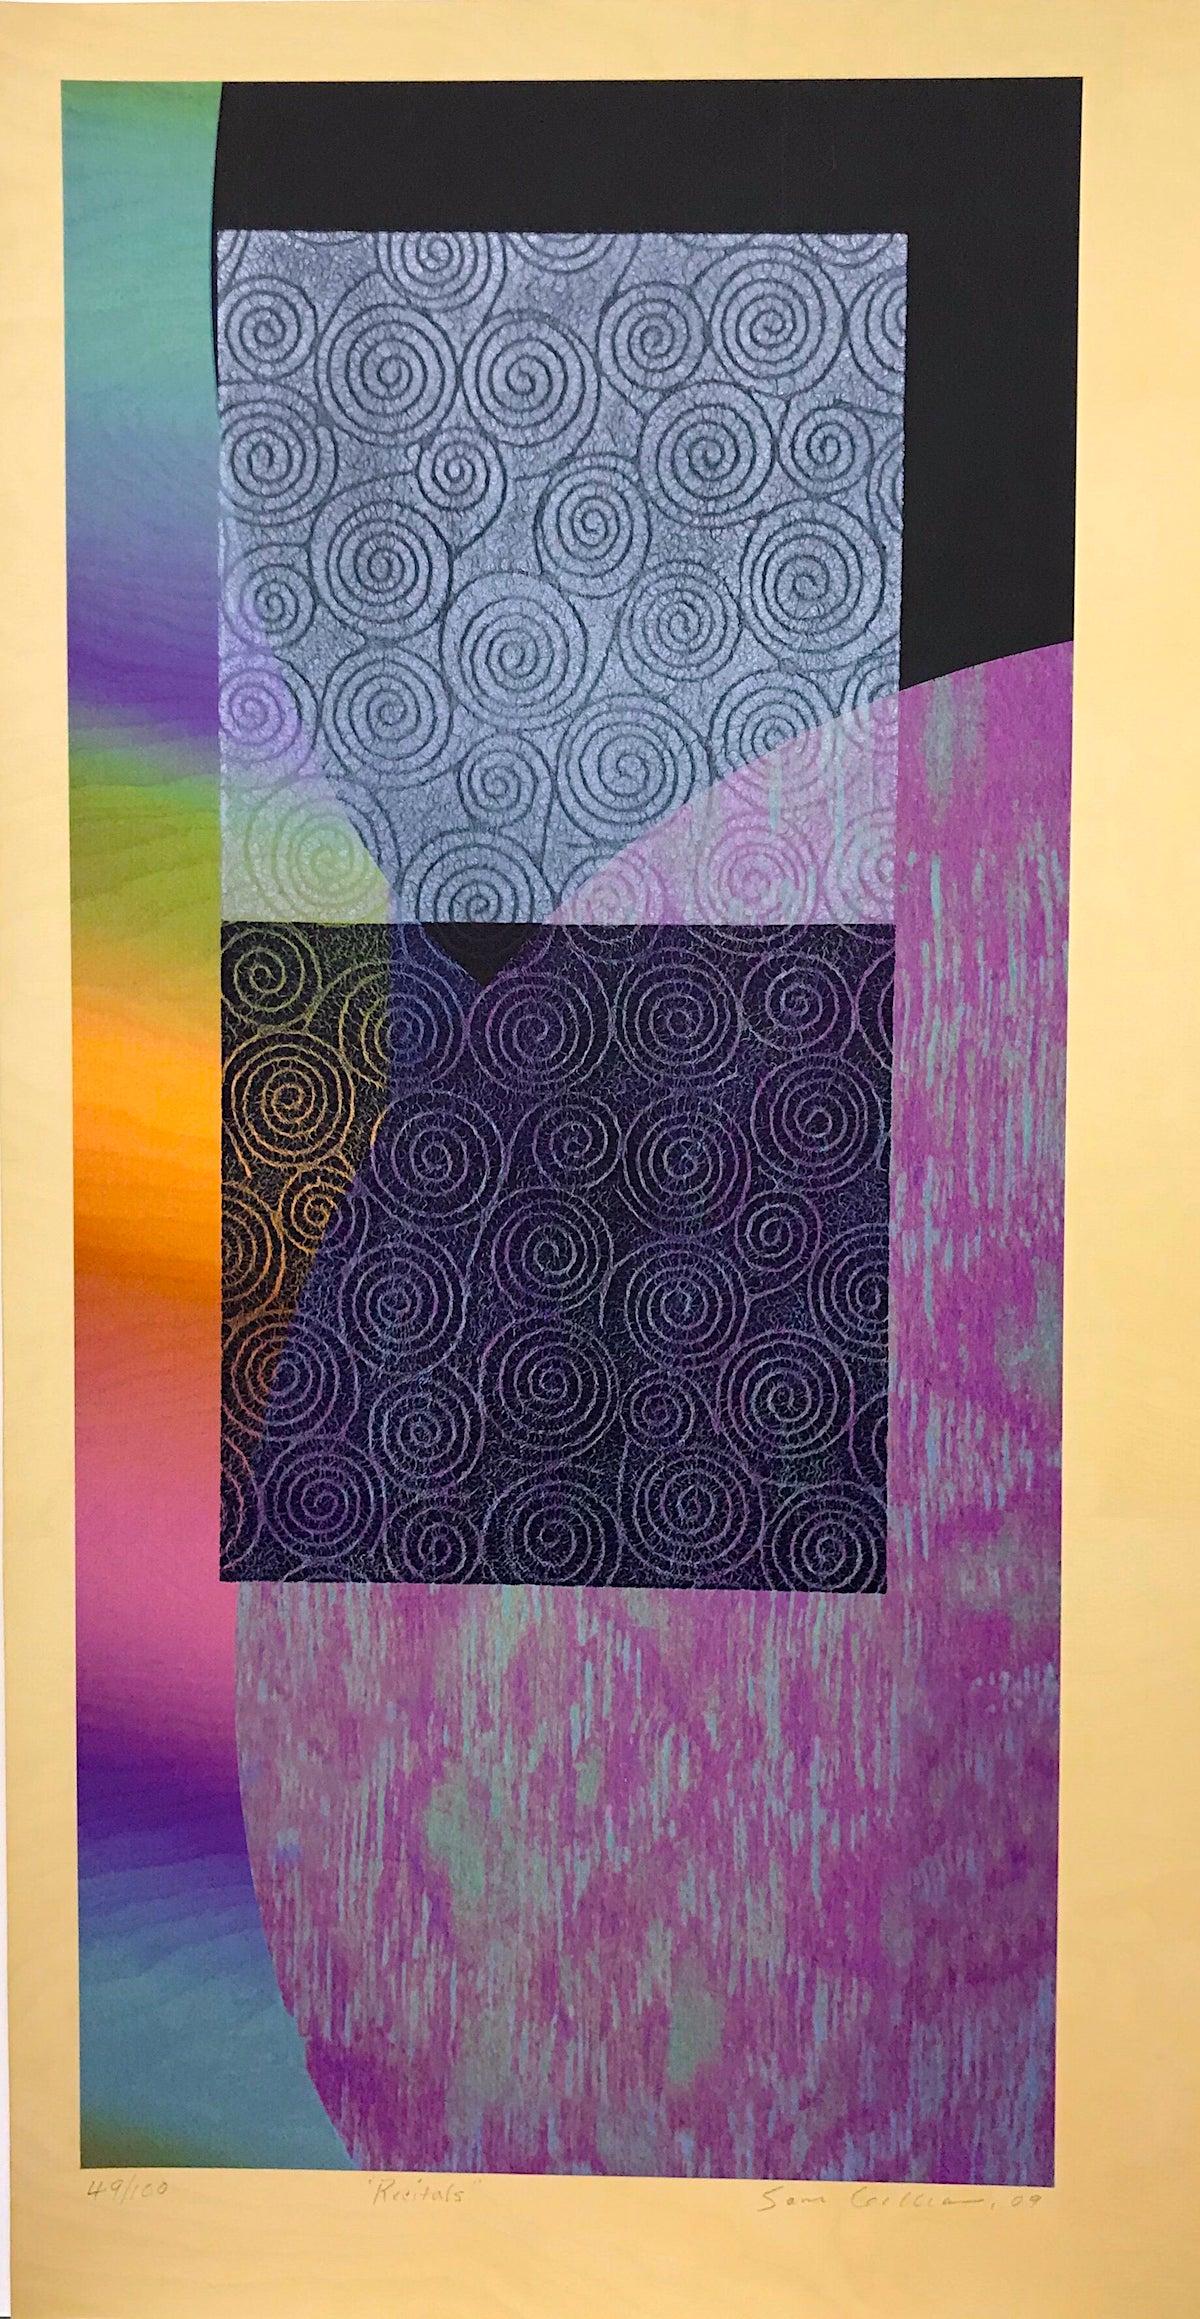 RECITALES Impresión en técnica mixta firmada, collage abstracto, colores del arco iris, espirales 